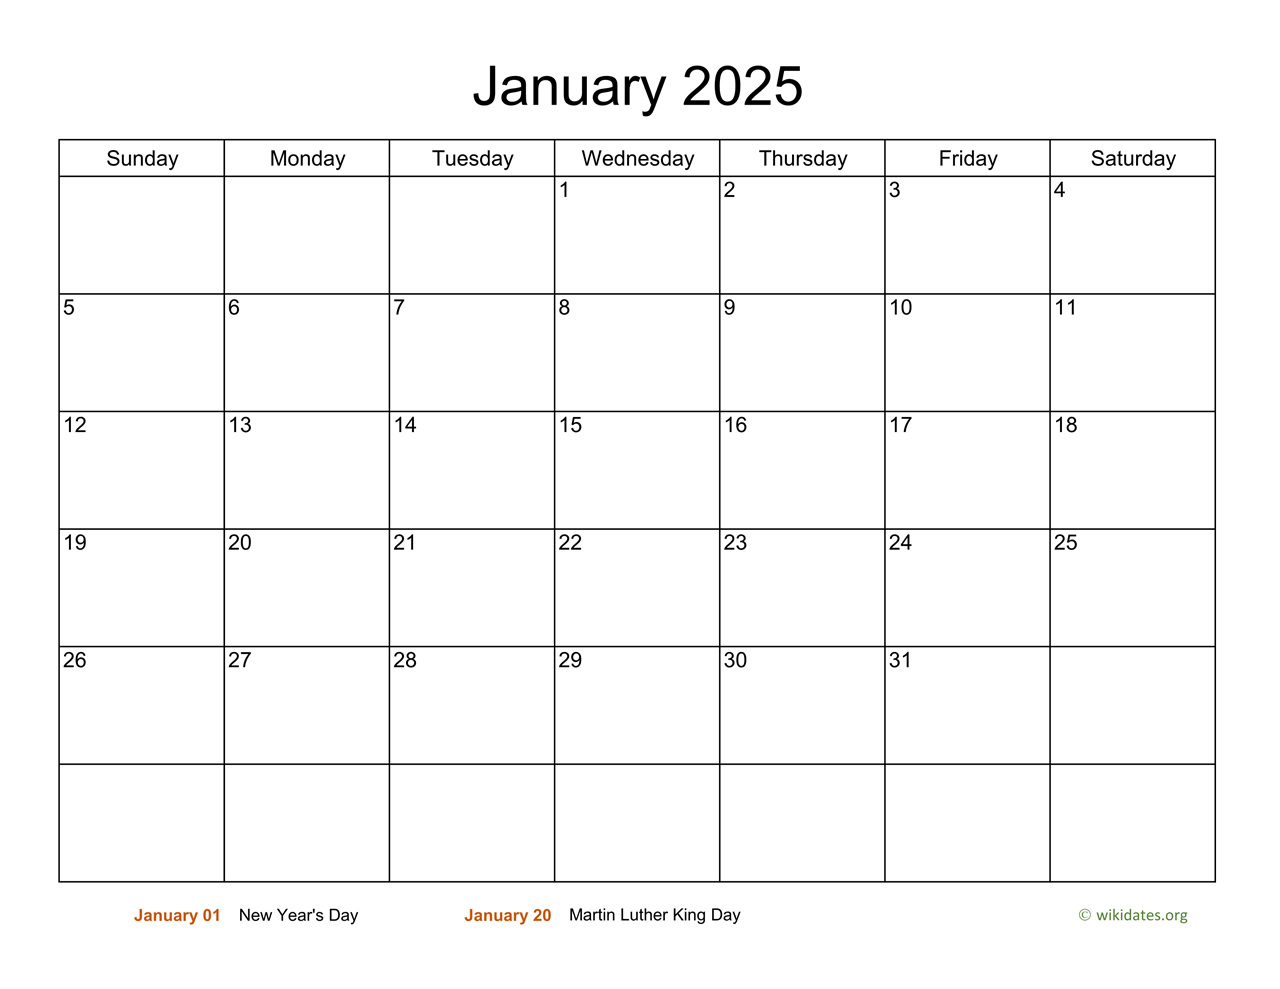 Basic Calendar For January 2025